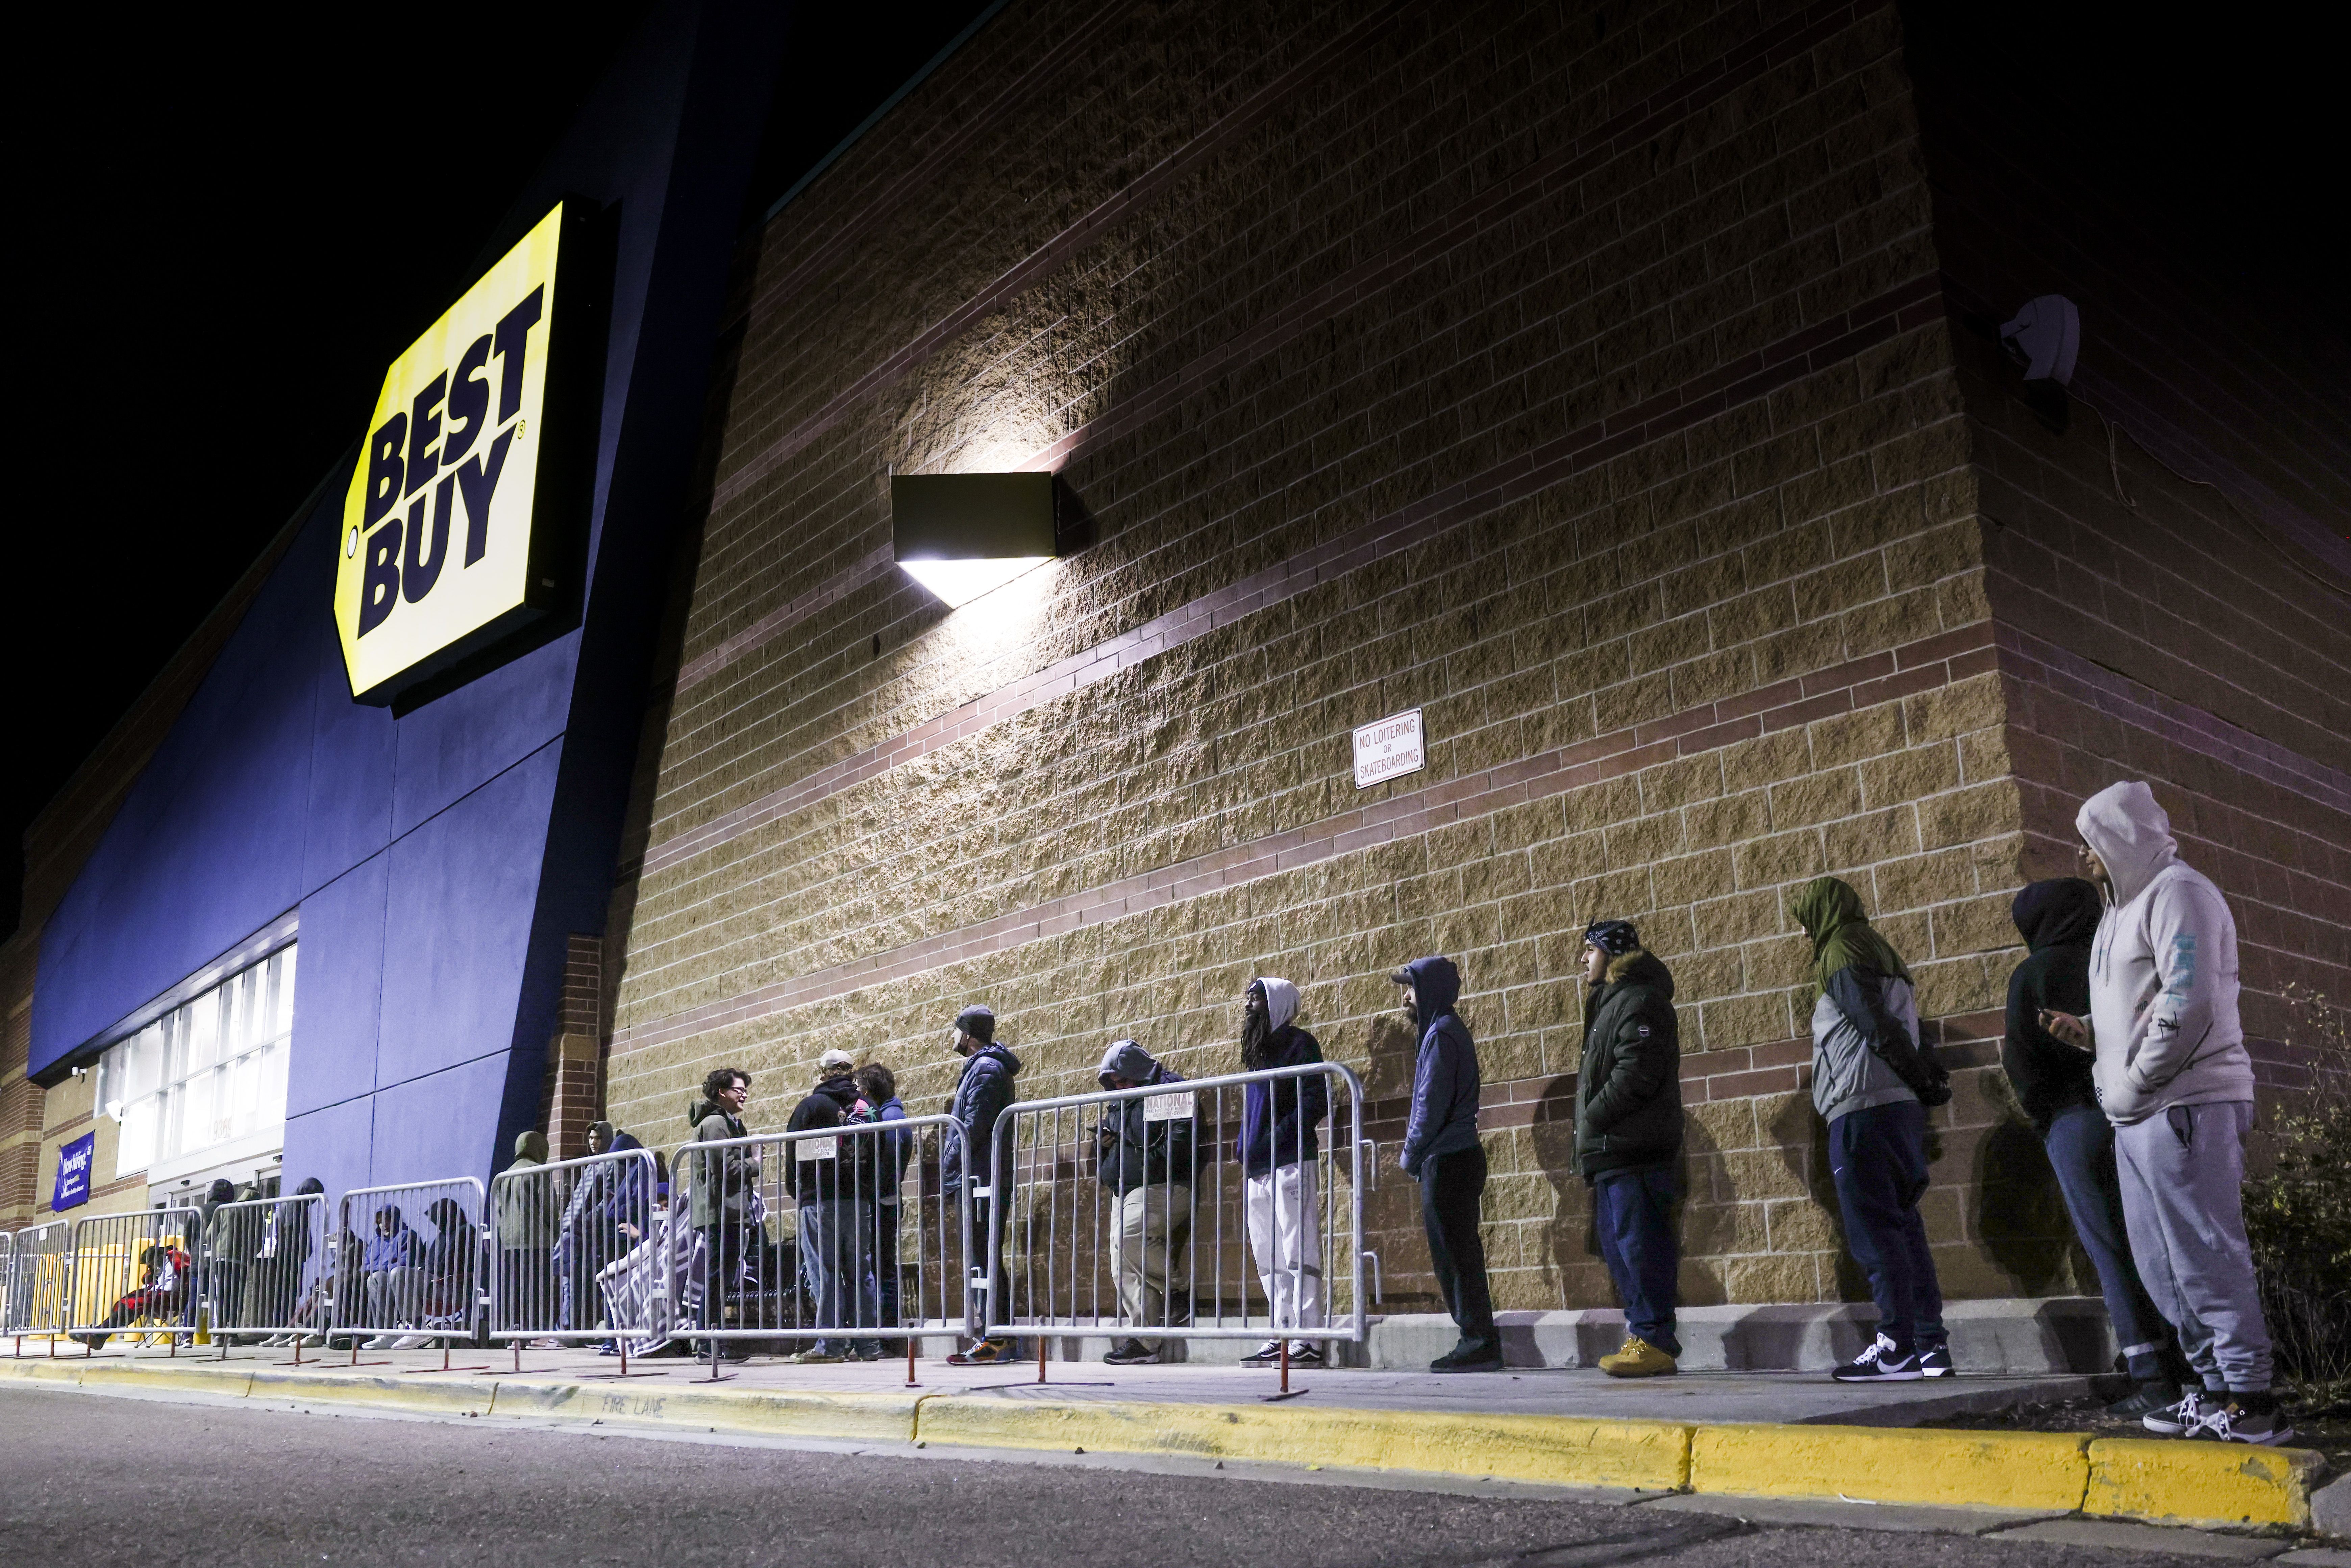 shoppers wait outside a best buy in the dark